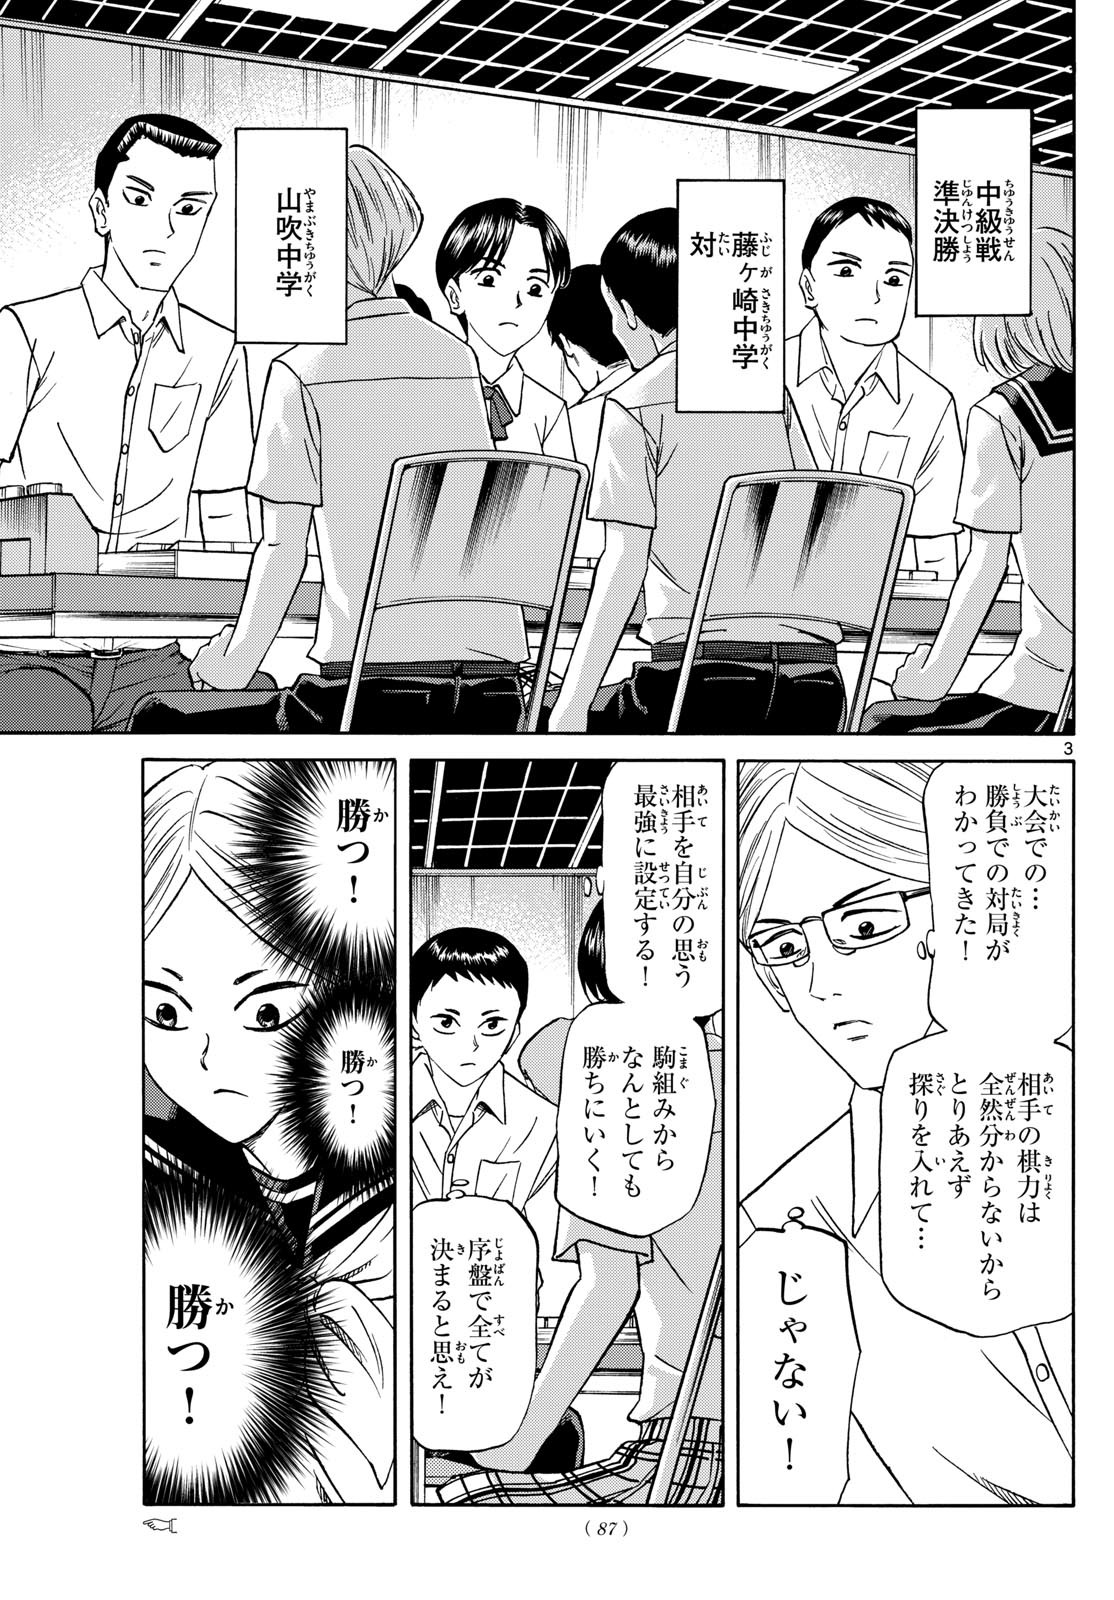 Ryu-to-Ichigo - Chapter 152 - Page 3